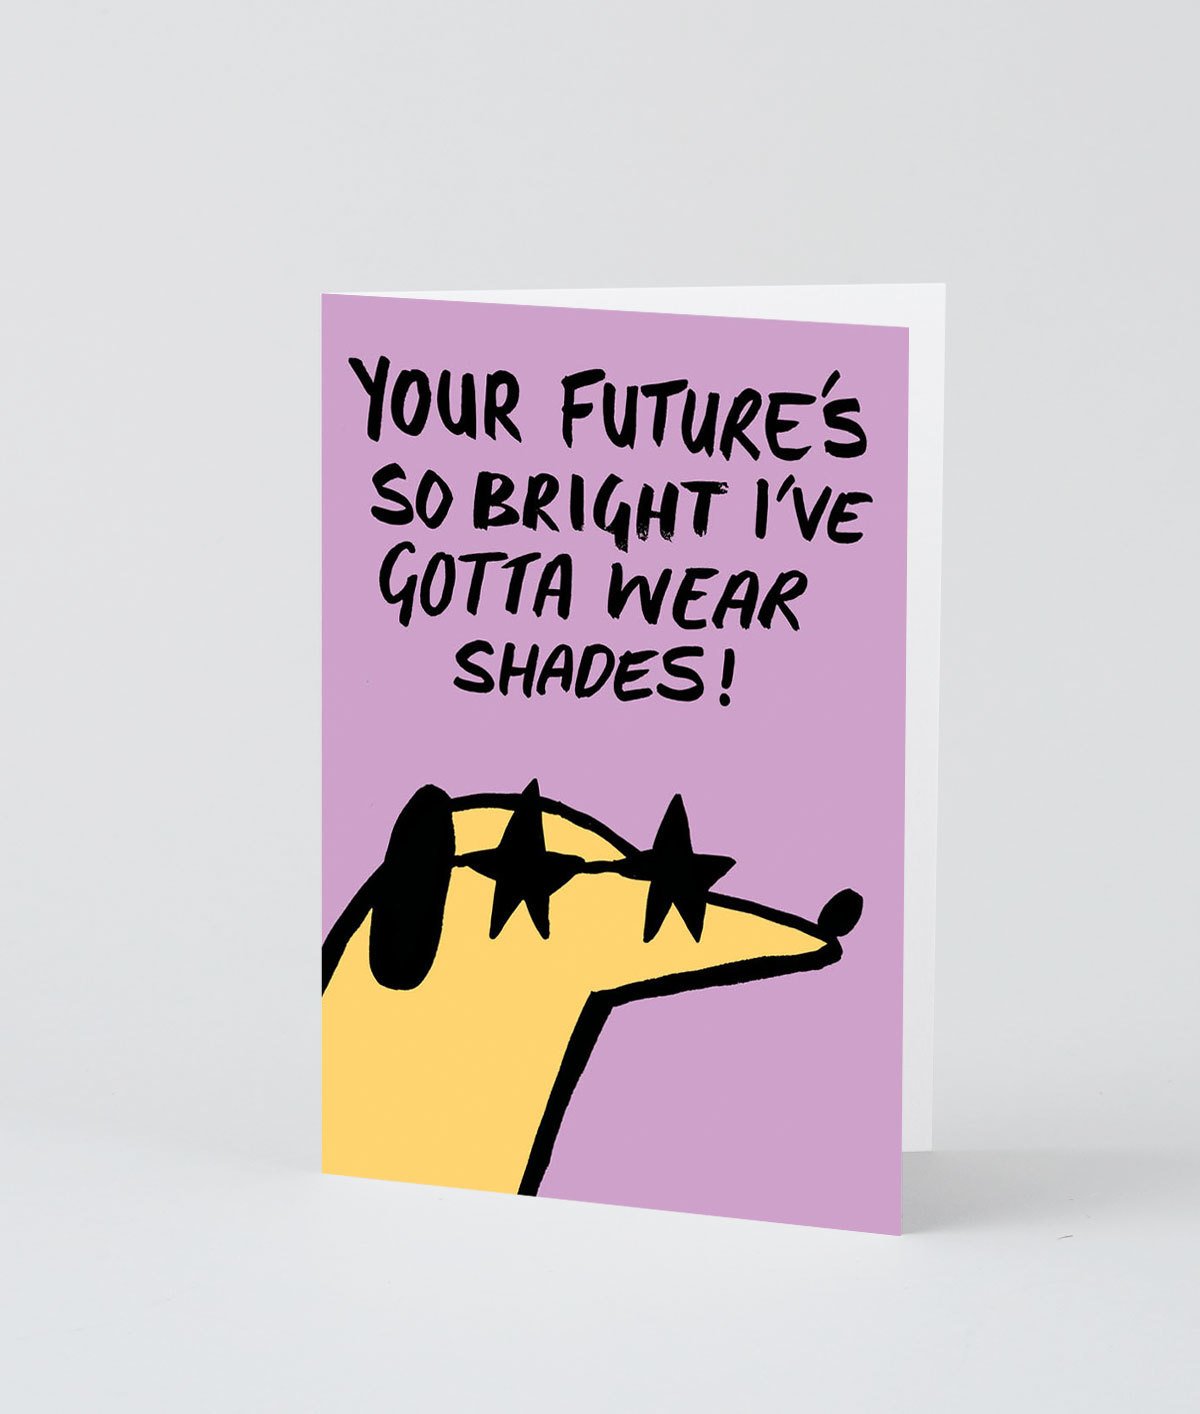 Your Future's Bright